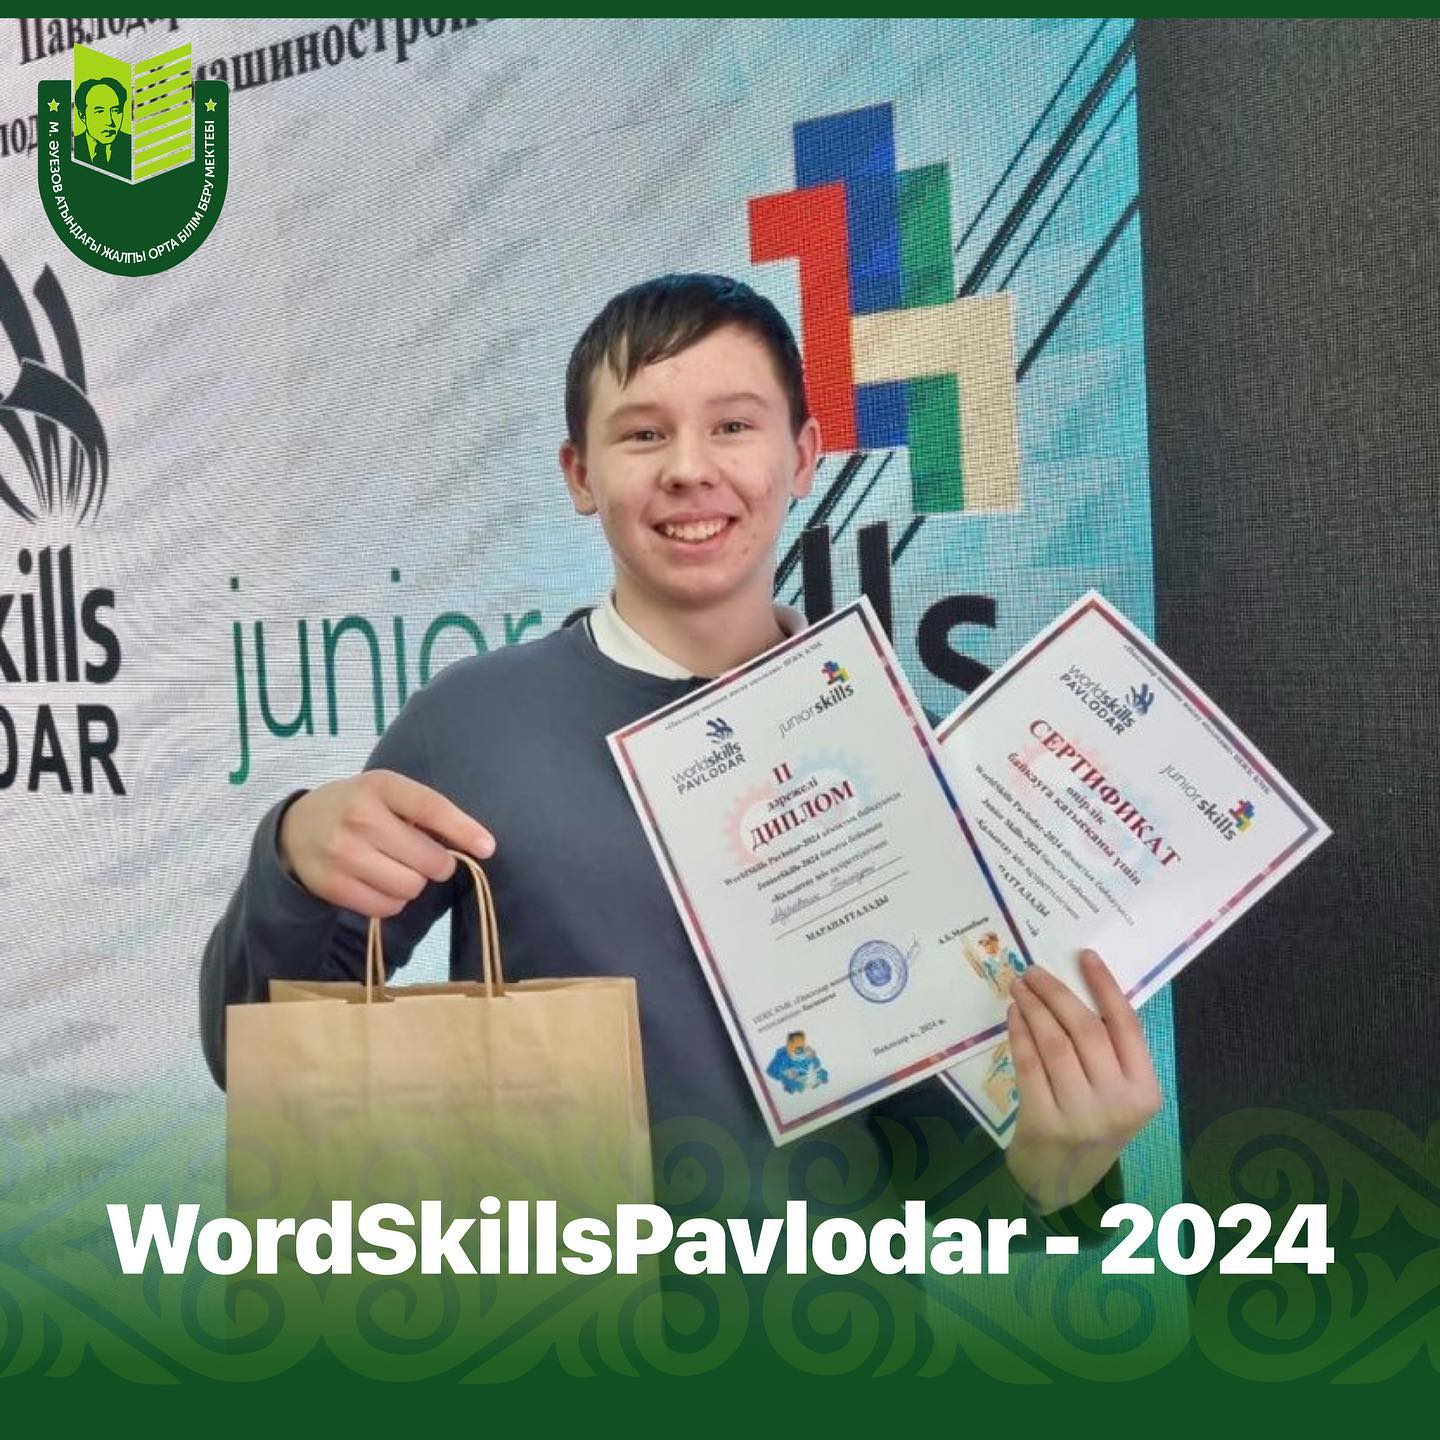 2 апреля 2024 года состоялся региональный конкурс «WordSkillsPavlodar - 2024», участие в котором приняли ученики школ Павлодарской области. Конкурс организован Павлодарским машиностроительным колледжем при участии Управления образования Павлодарской облас